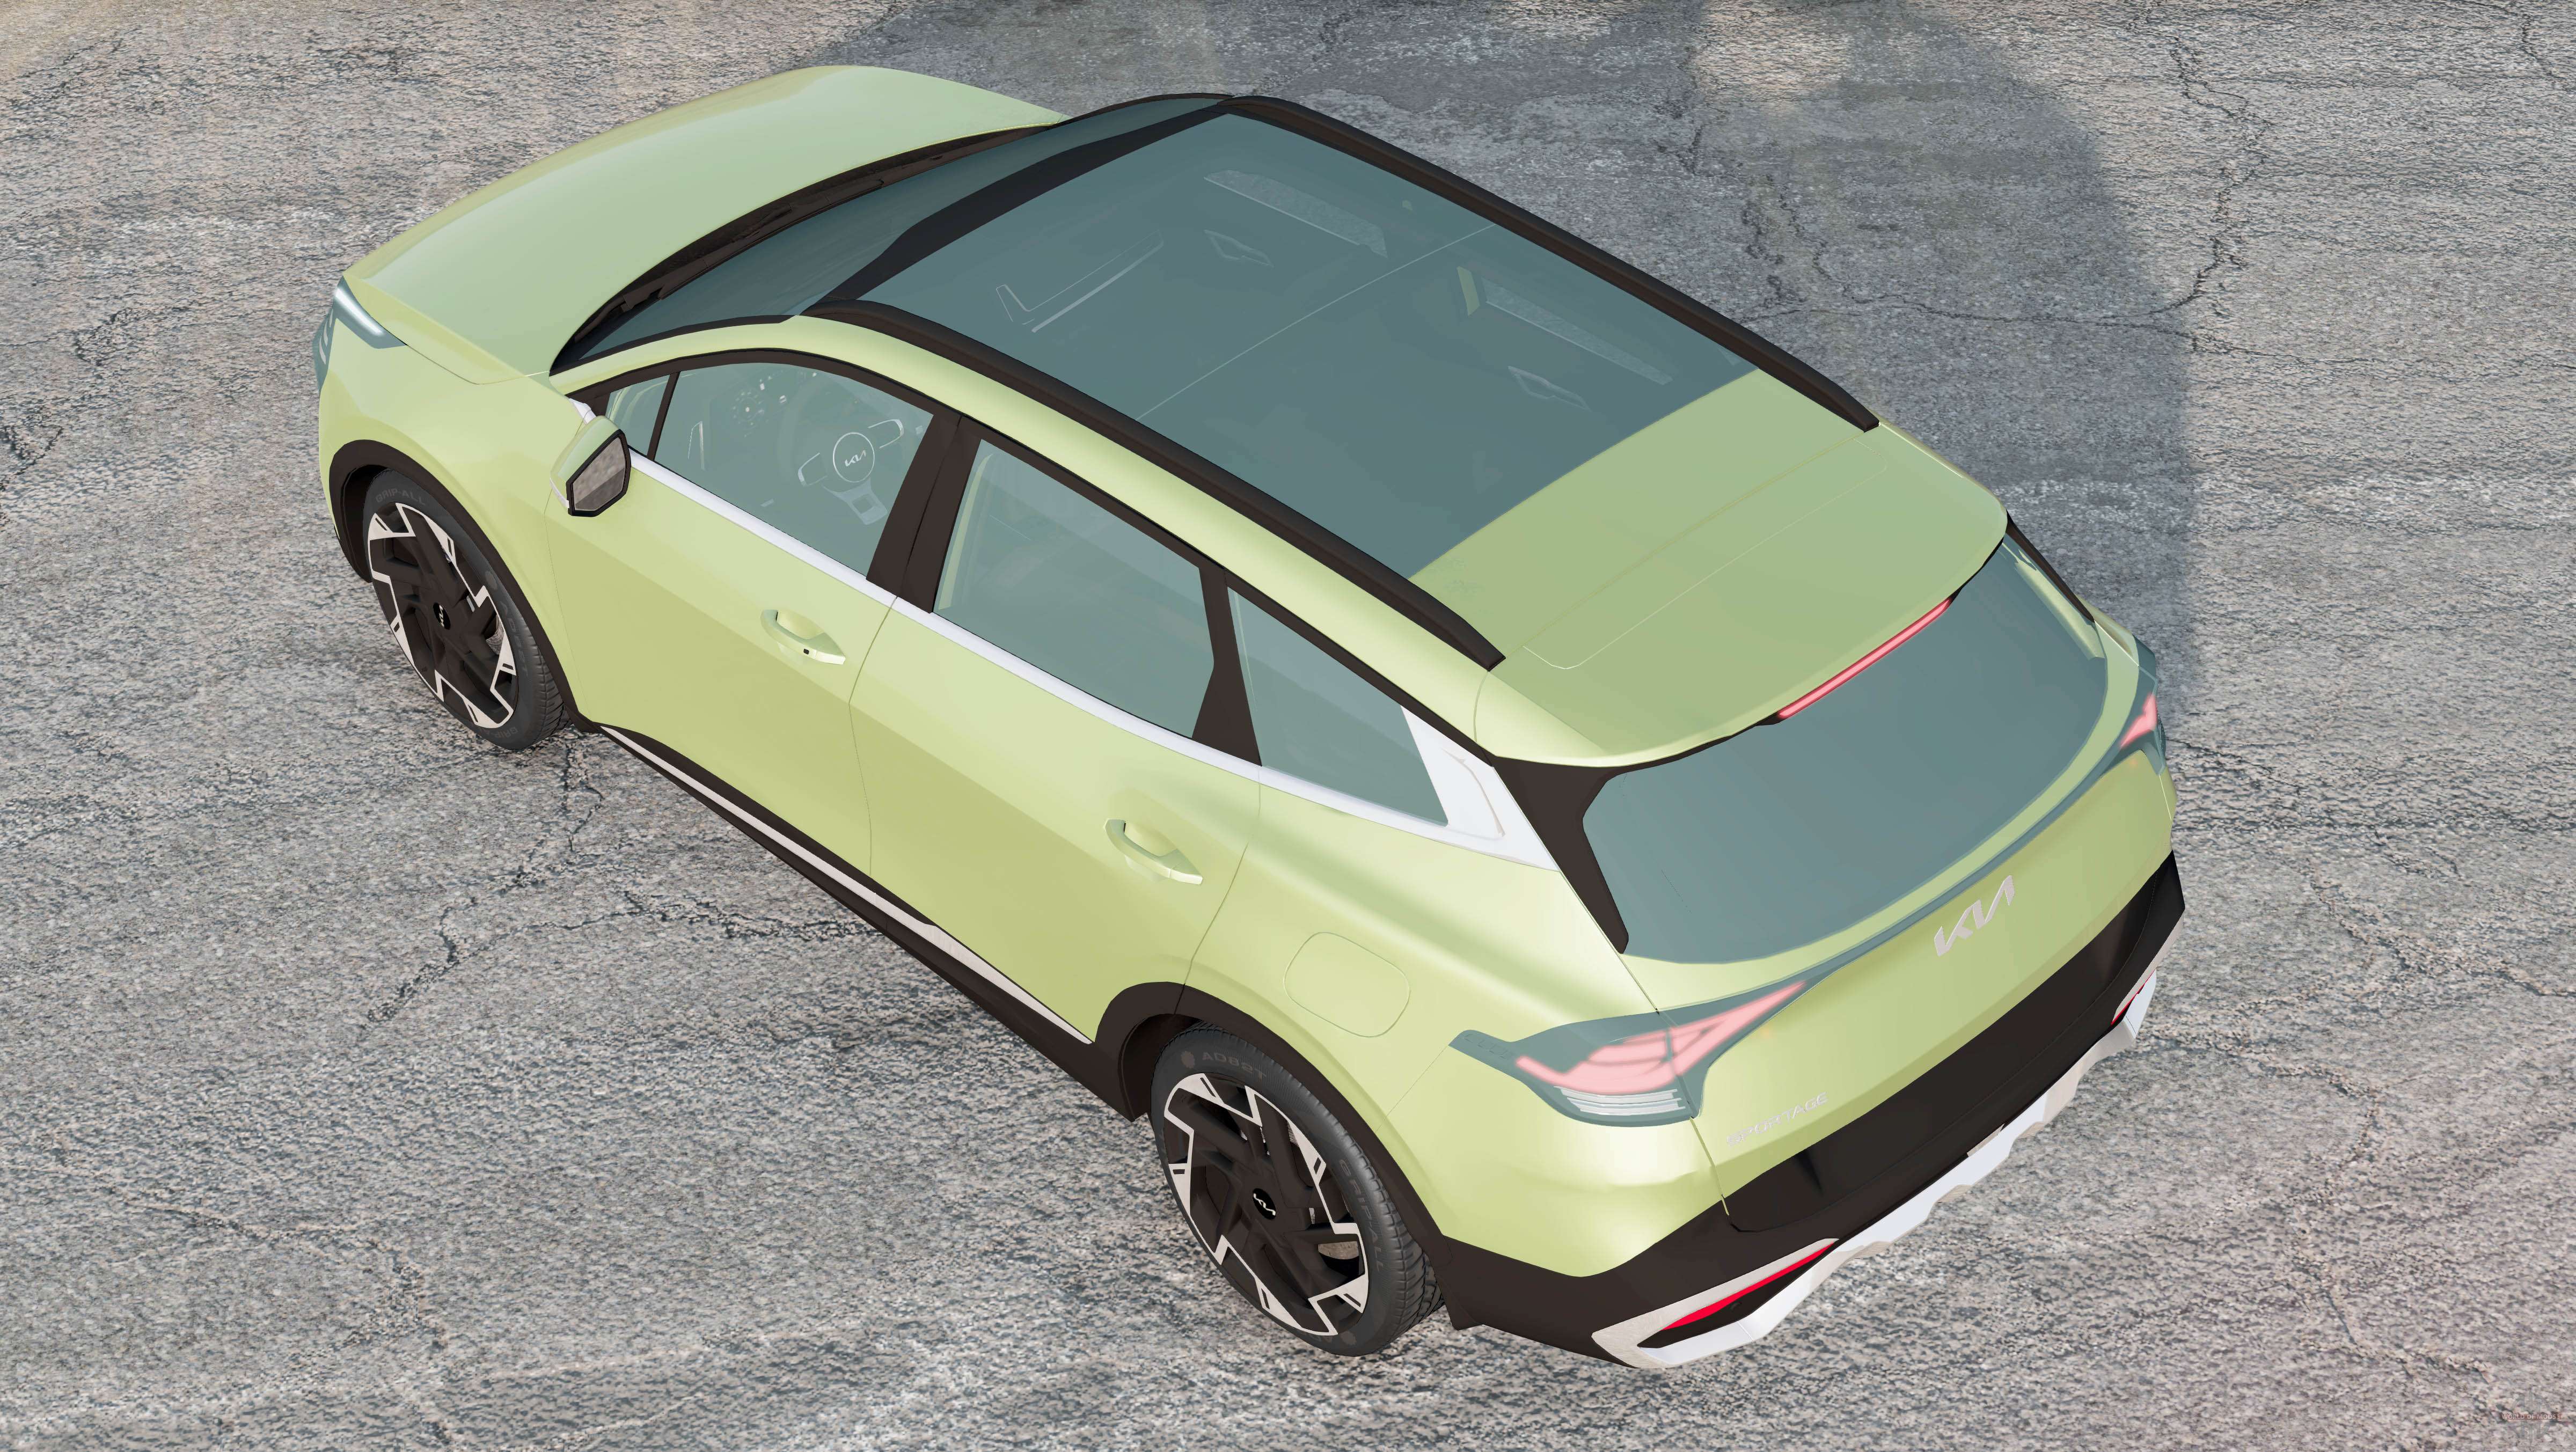 Kia Sportage (NQ5) 2021 for BeamNG Drive